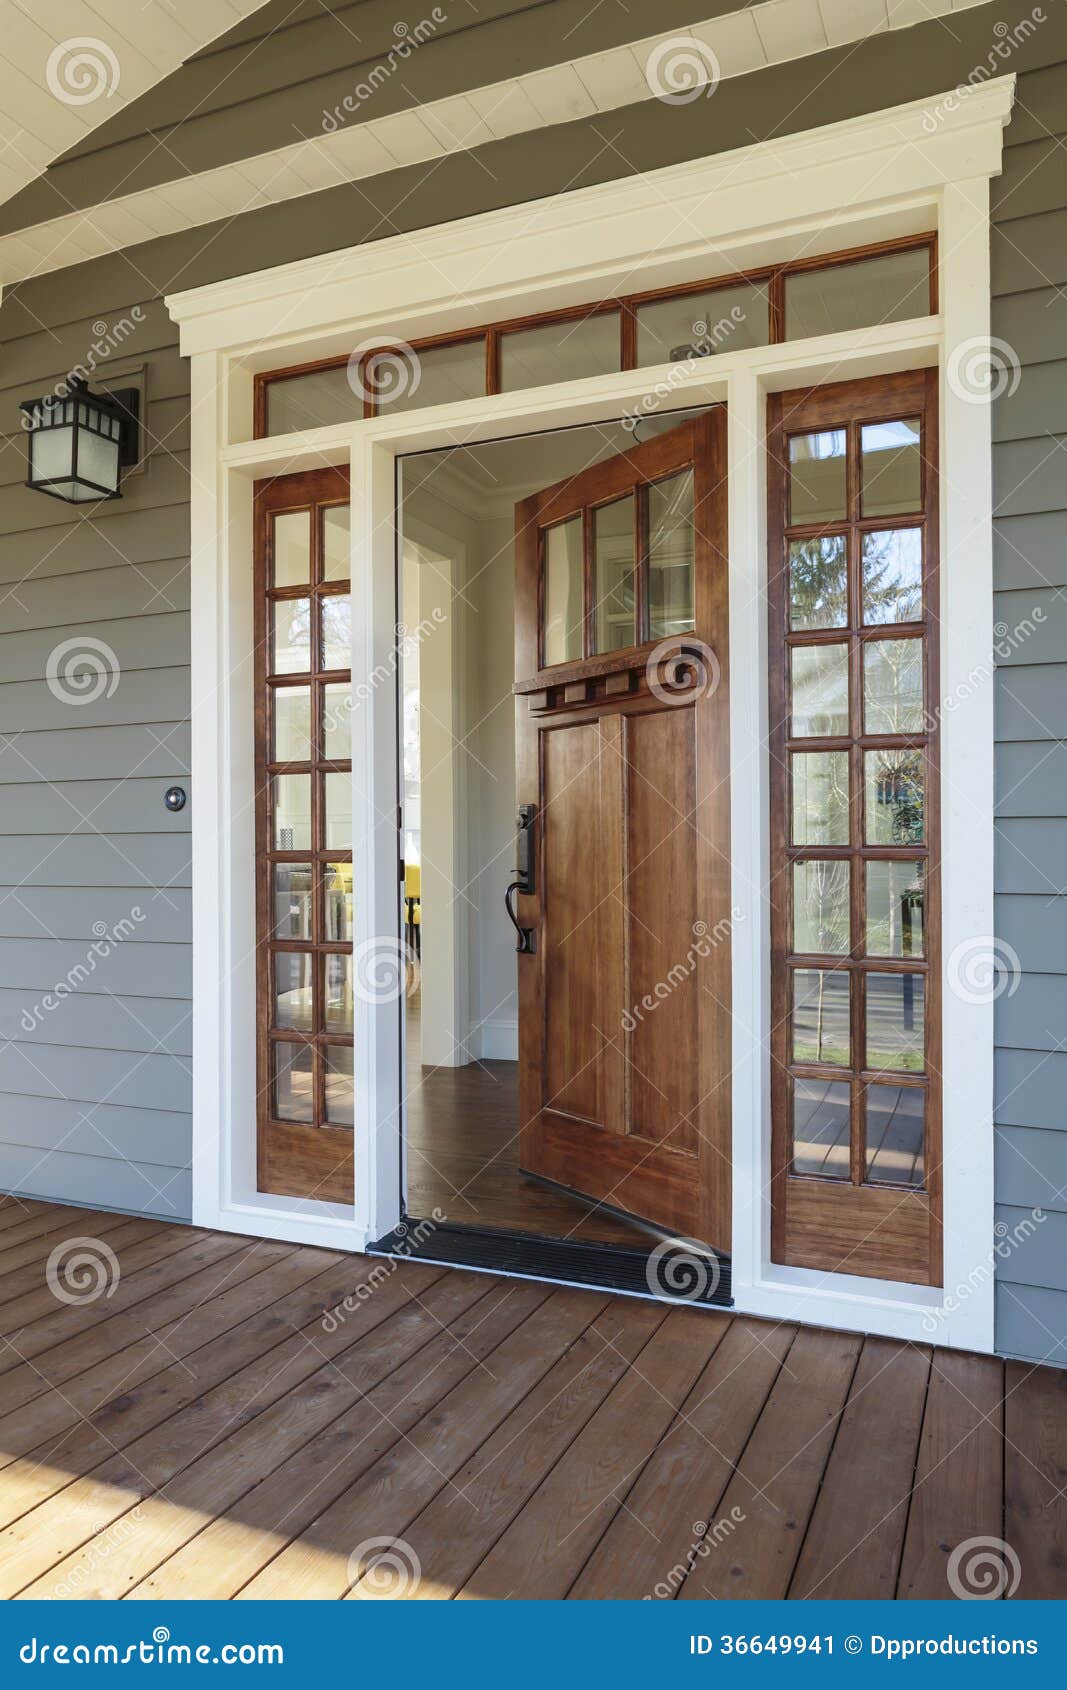 Exterior Shot of an Open Wooden Front Door Stock Image - Image of